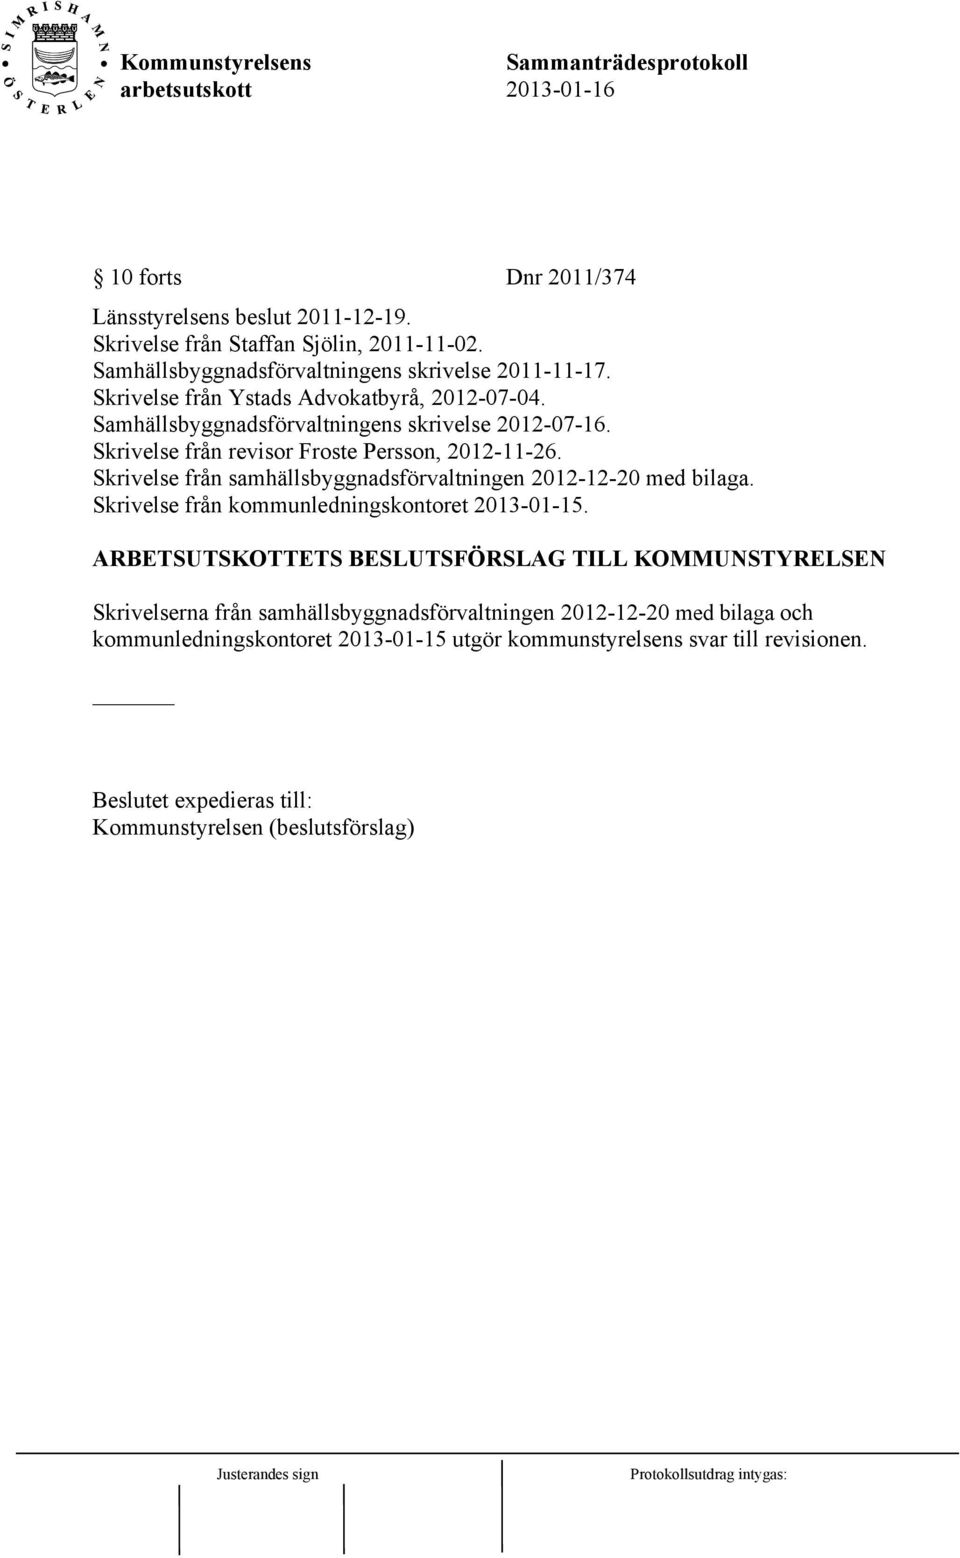 Skrivelse från samhällsbyggnadsförvaltningen 2012-12-20 med bilaga. Skrivelse från kommunledningskontoret 2013-01-15.